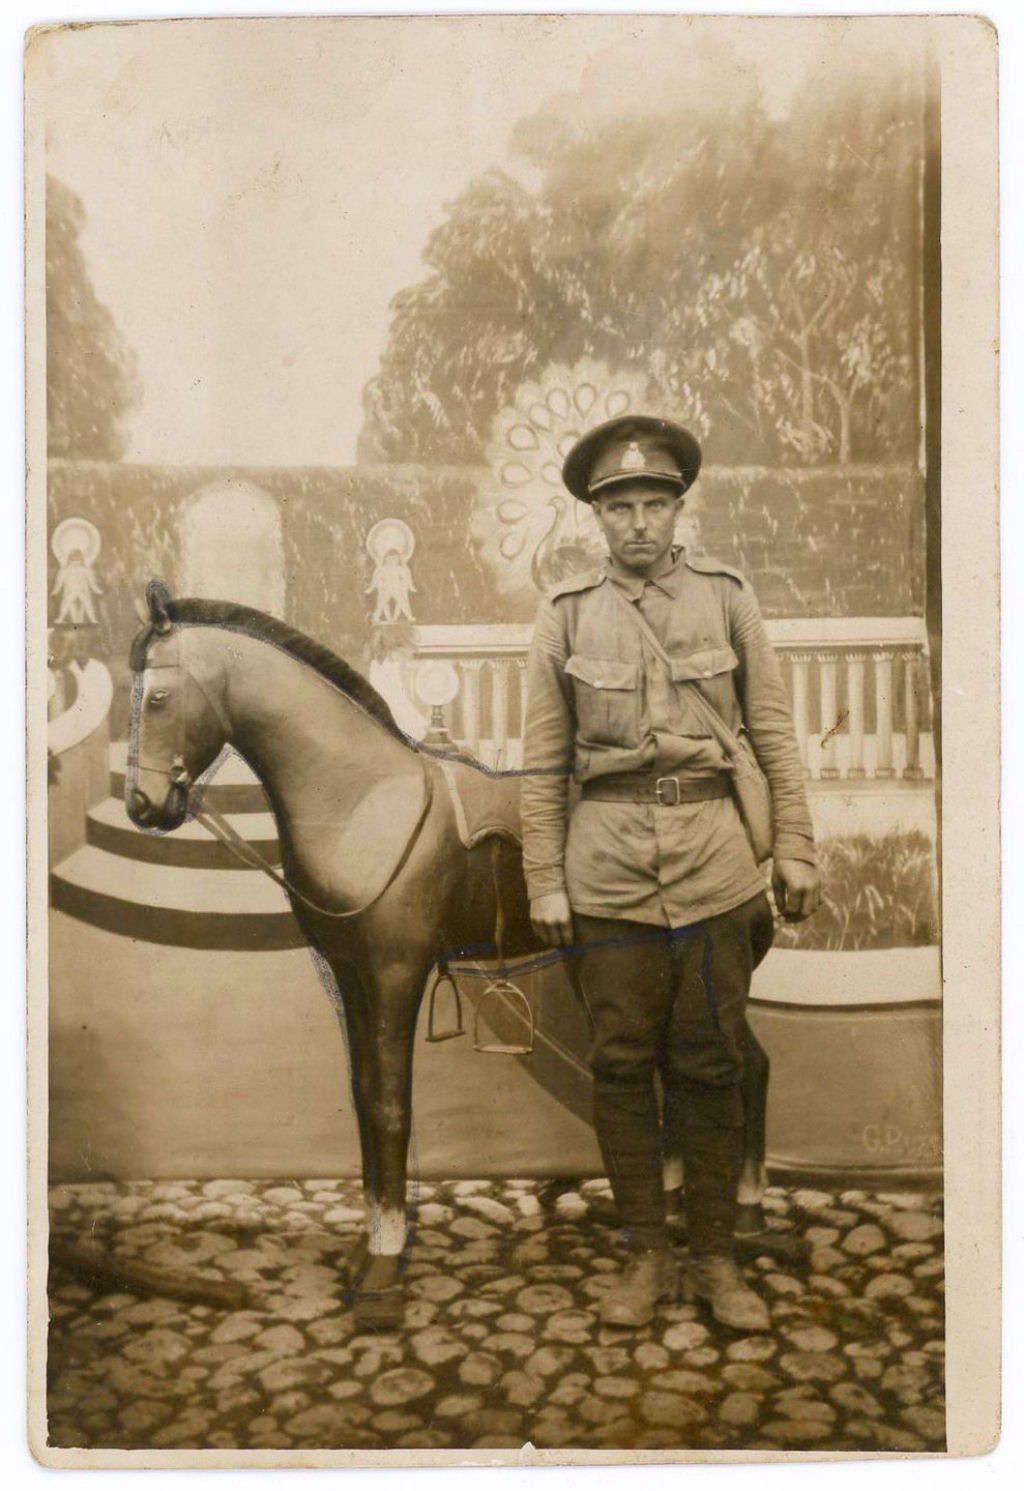 Fotos engraadas mostram soldados da Primeira Guerra Mundial posando com falsos adereos militares 28